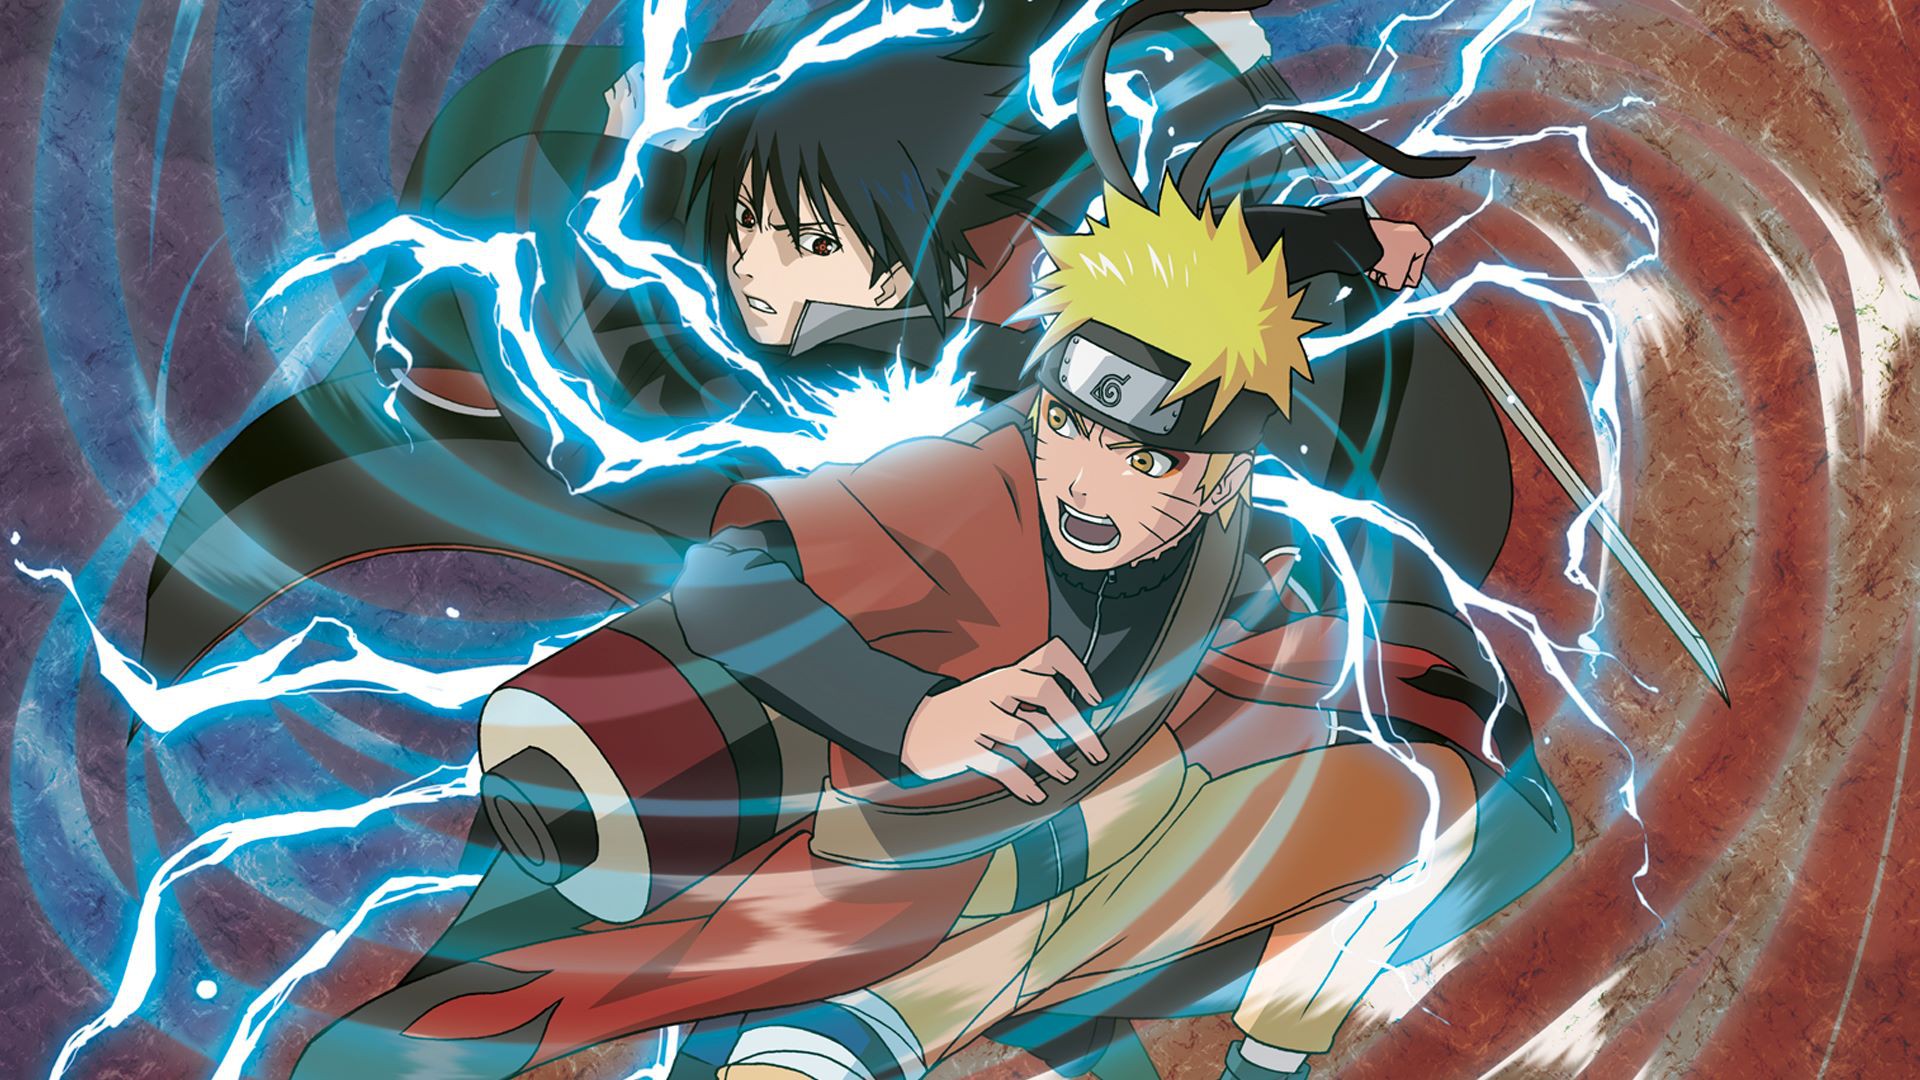 Chia sẻ sự tình cảm giữa các nhân vật trong Naruto với bức ảnh tuyệt đẹp của Naruto, Sakura và cặp đôi. Bạn sẽ được chiêm ngưỡng những khoảnh khắc đáng yêu nhất của phim, khi những nhân vật tạo ra mối quan hệ đặc biệt đầy cảm xúc. Bức ảnh này sẽ khiến cho bạn thấy tình yêu và tình bạn trong Naruto vô cùng đáng nhớ.